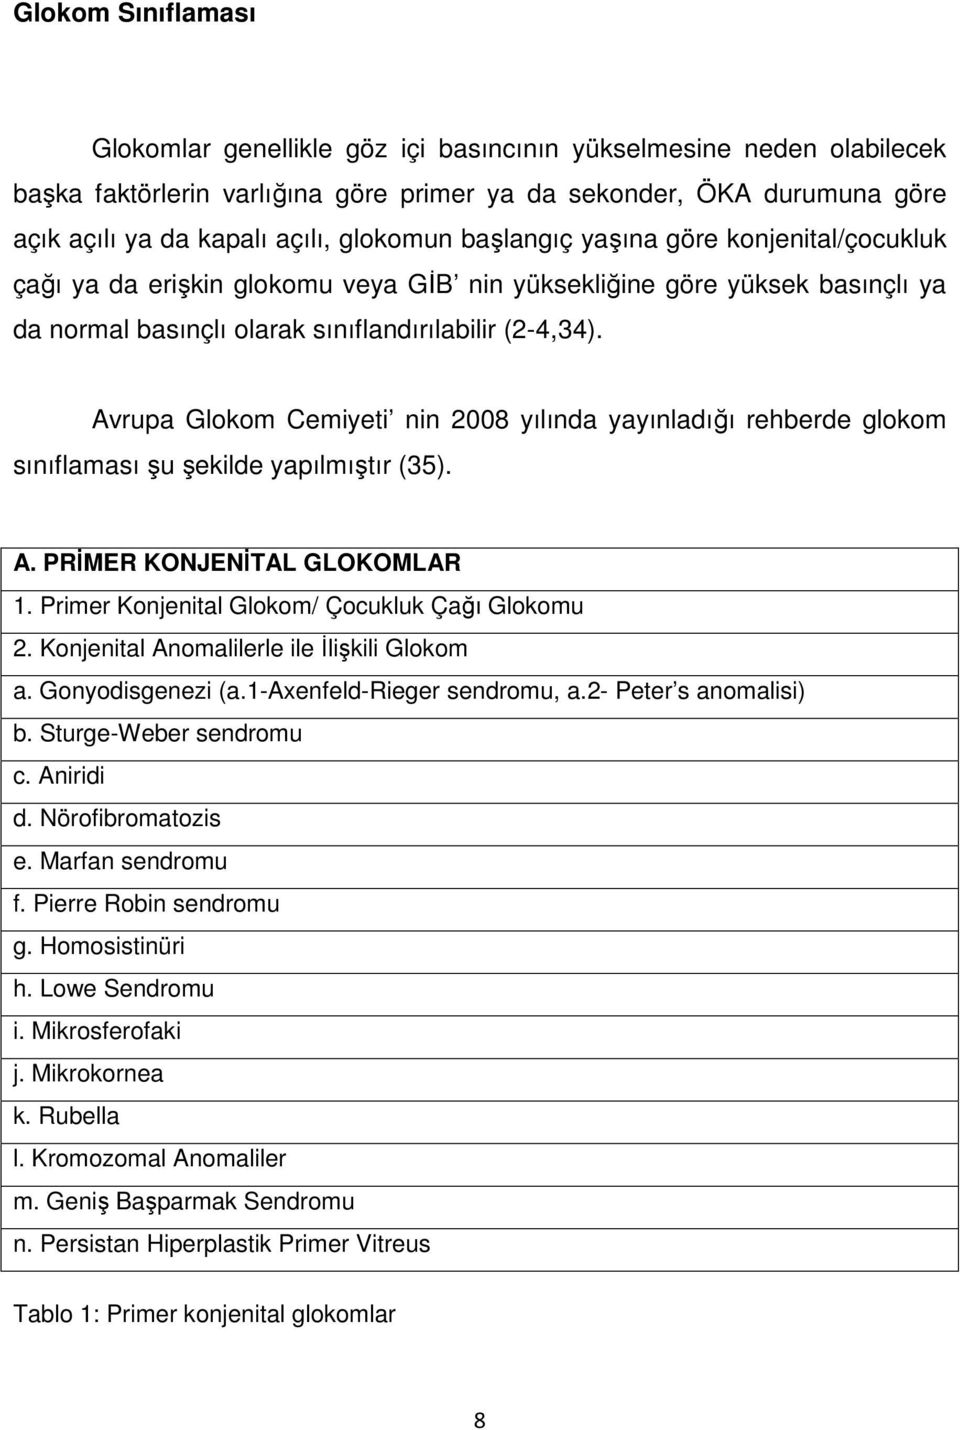 Avrupa Glokom Cemiyeti nin 2008 yılında yayınladığı rehberde glokom sınıflaması şu şekilde yapılmıştır (35). A. PRİMER KONJENİTAL GLOKOMLAR 1. Primer Konjenital Glokom/ Çocukluk Çağı Glokomu 2.